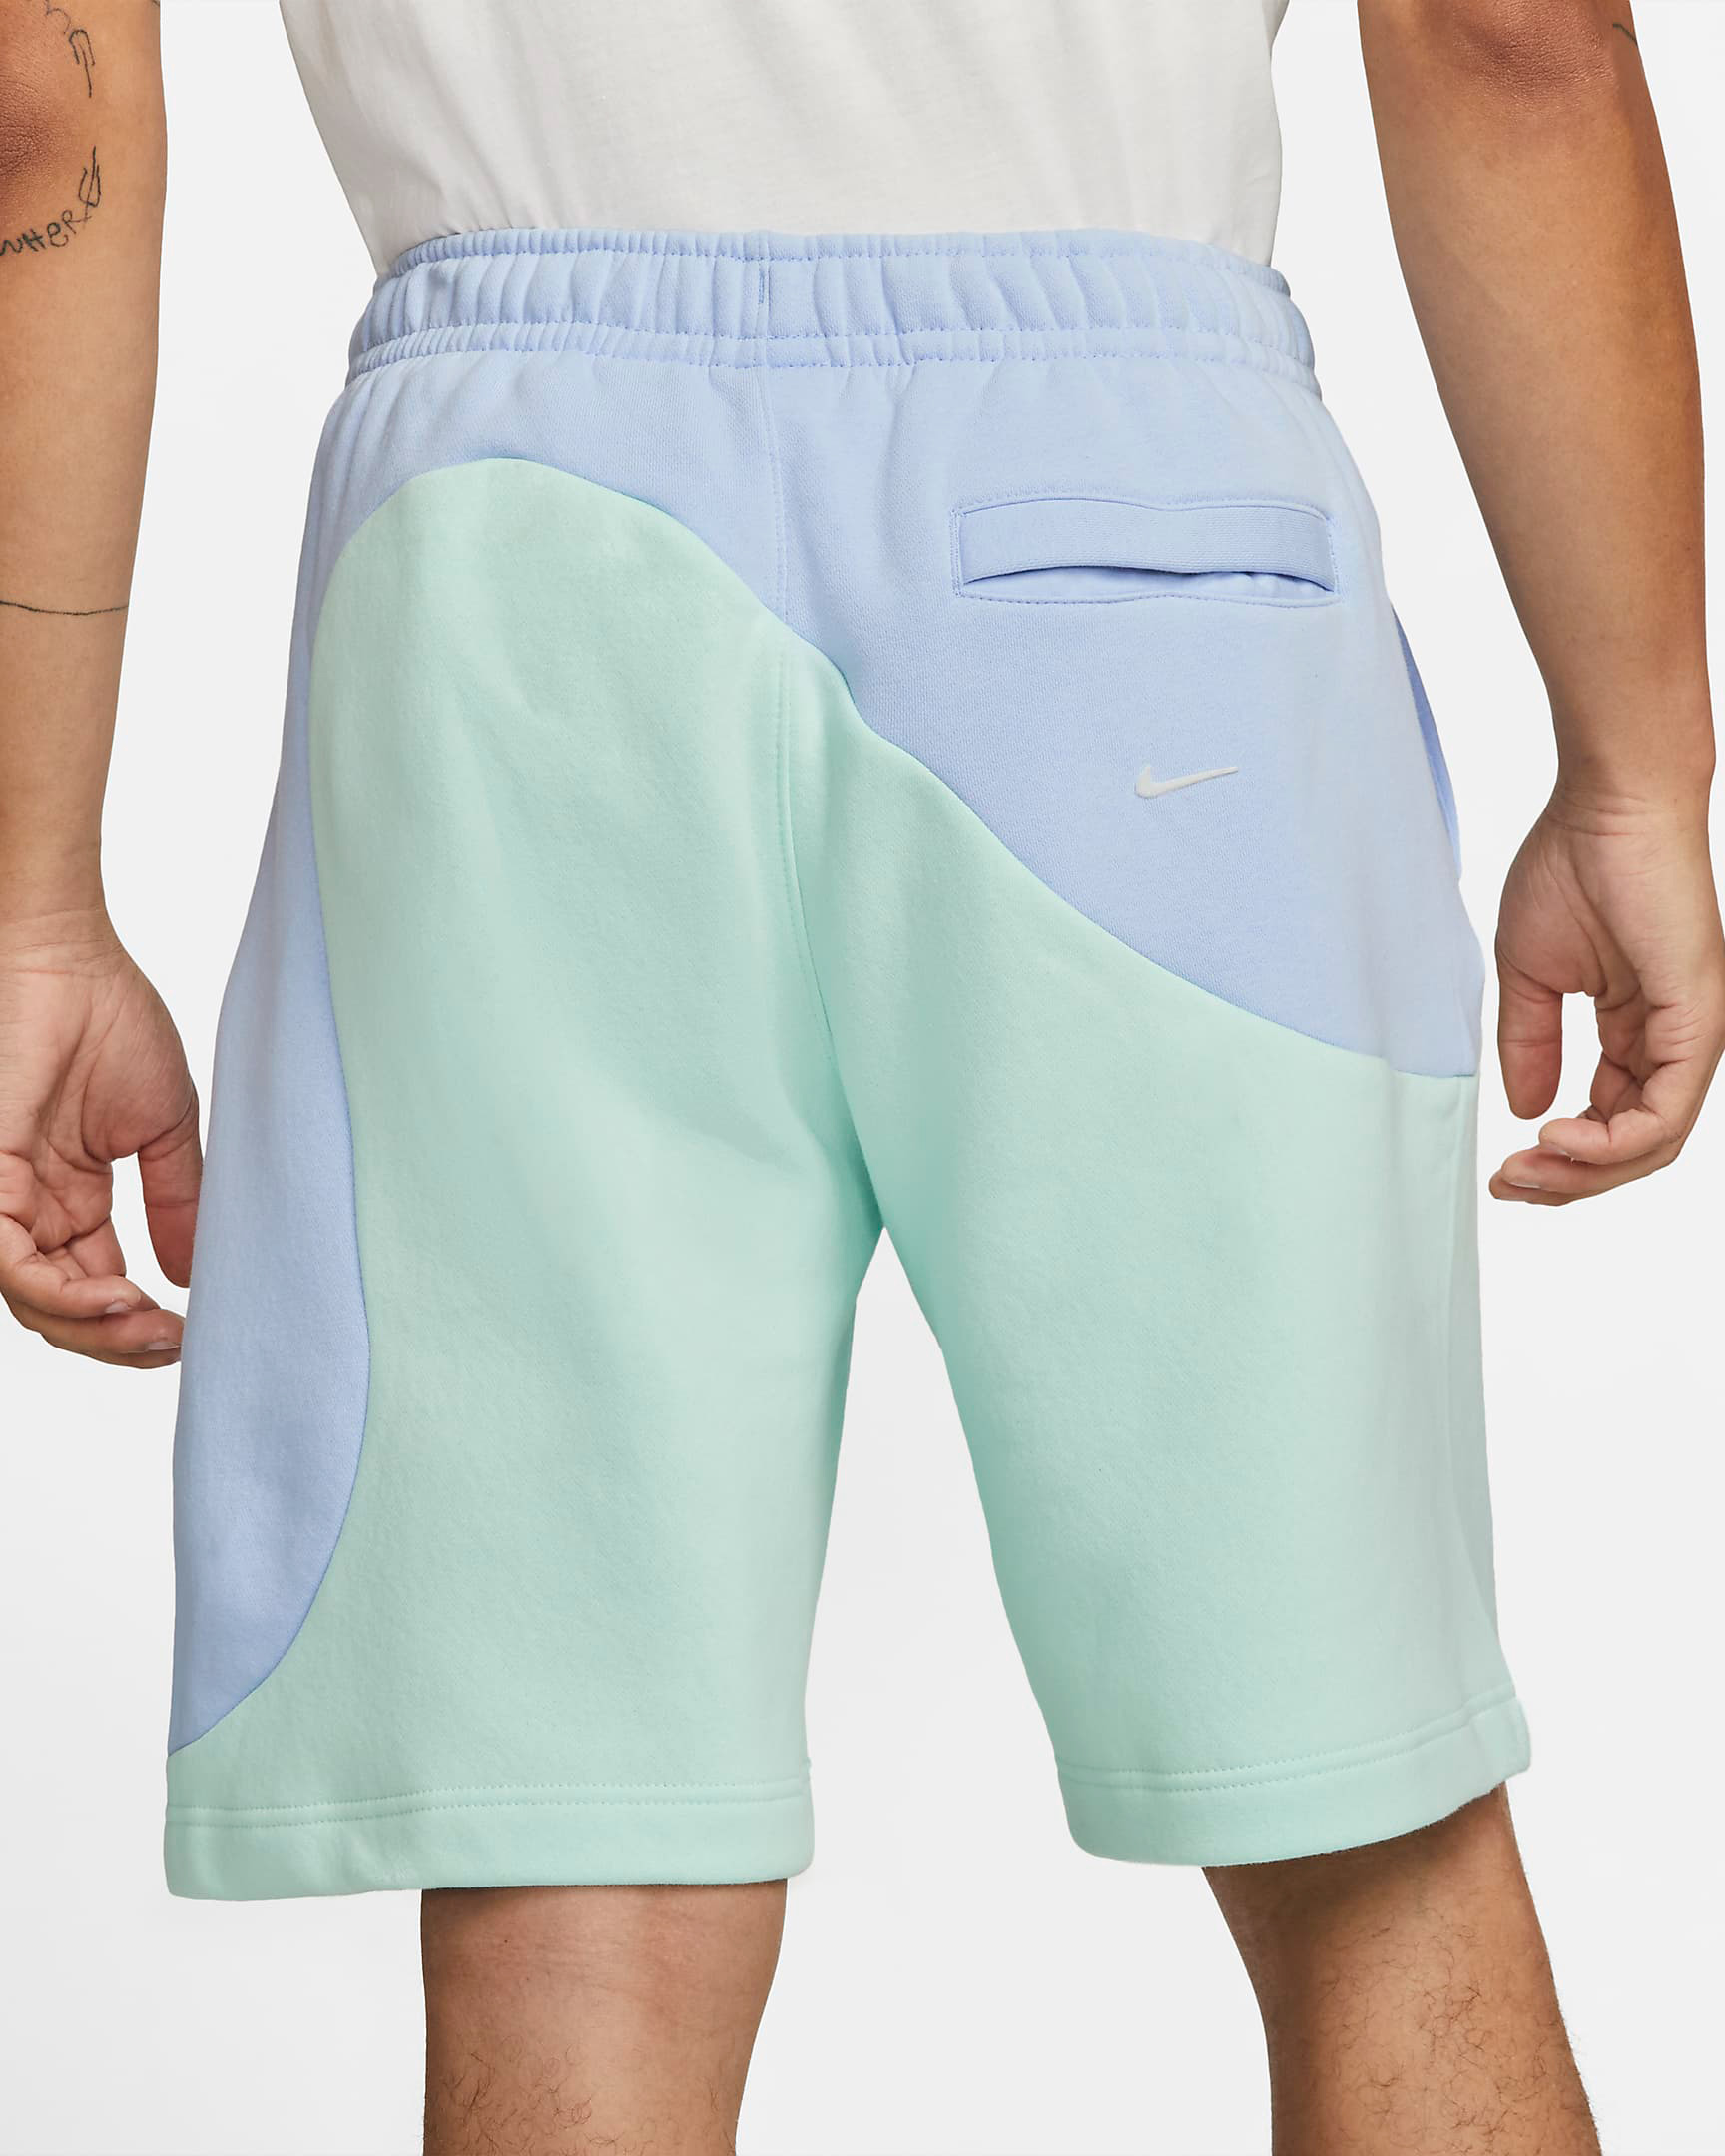 nike-sportswear-color-clash-fleece-shorts-light-marine-mint-foam-3